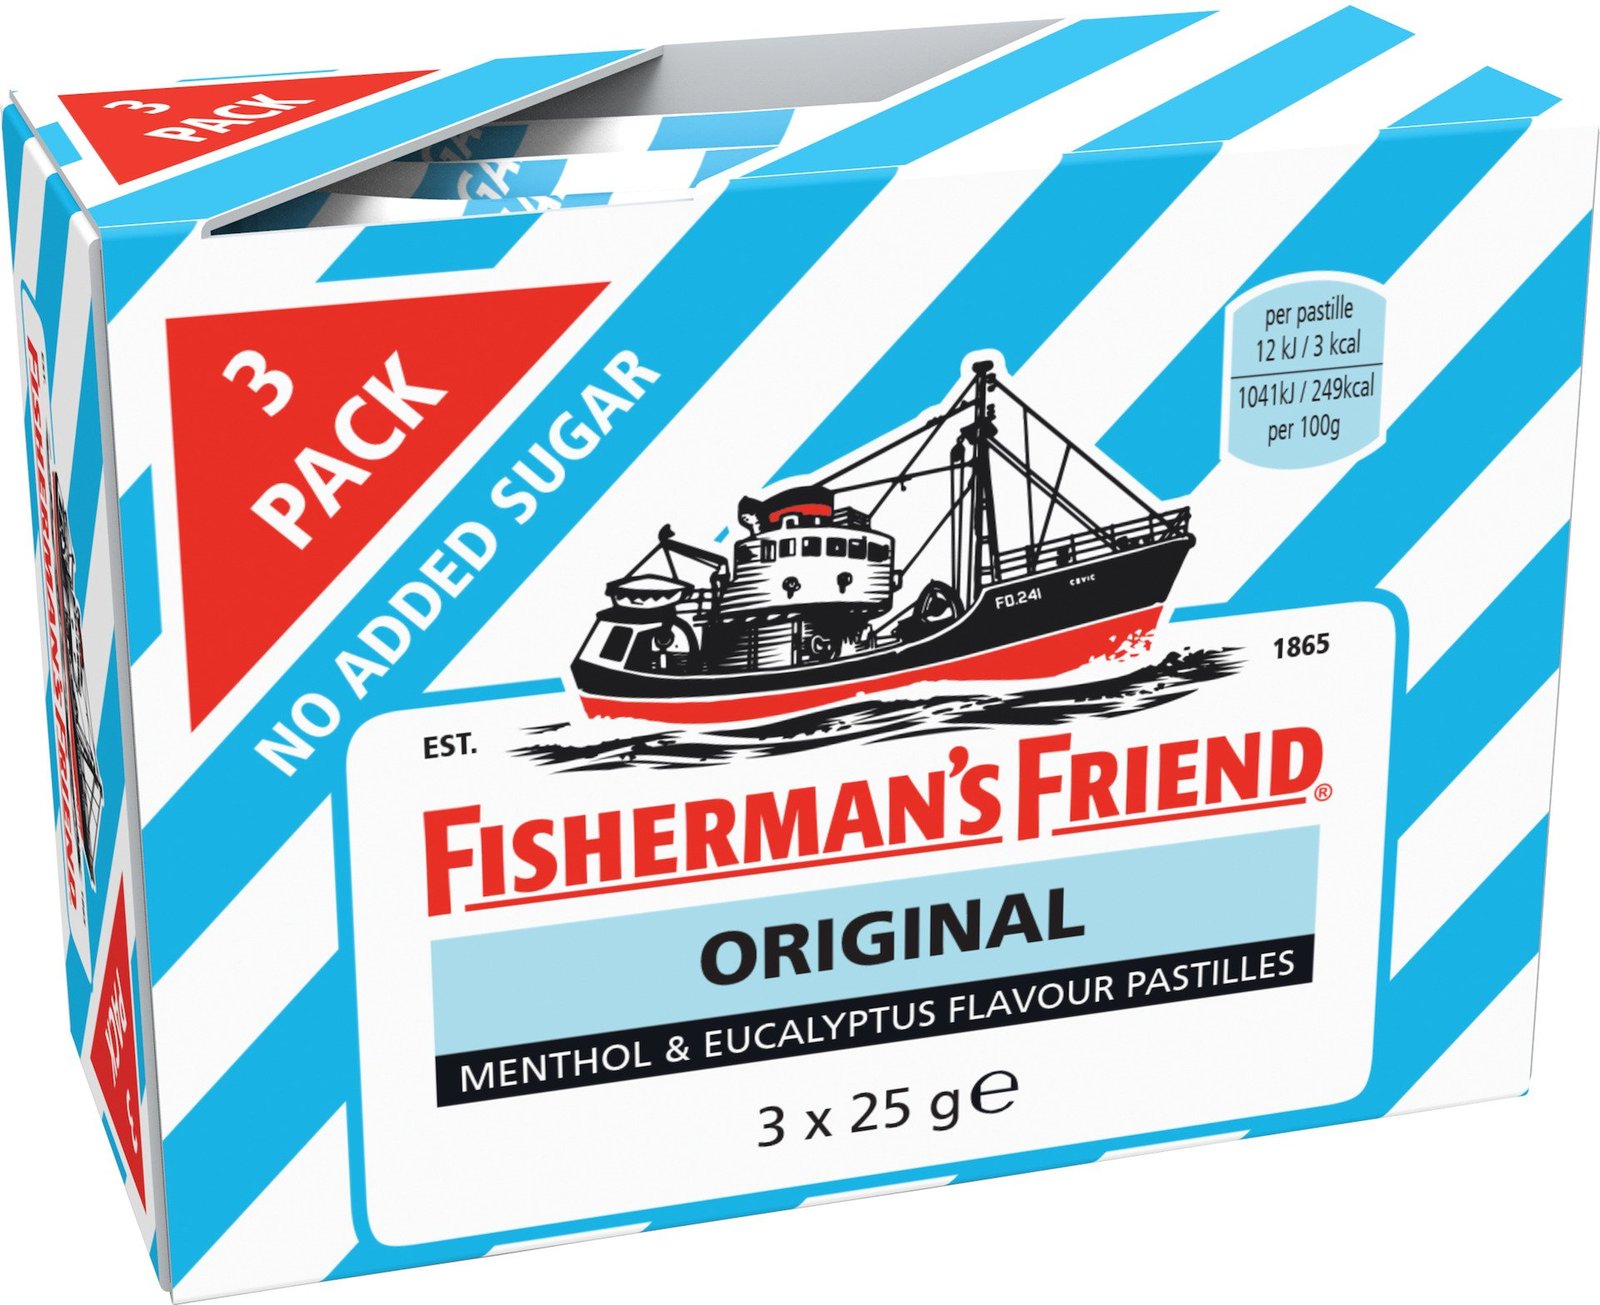 Fisherman's Friend Original 3 x 25g